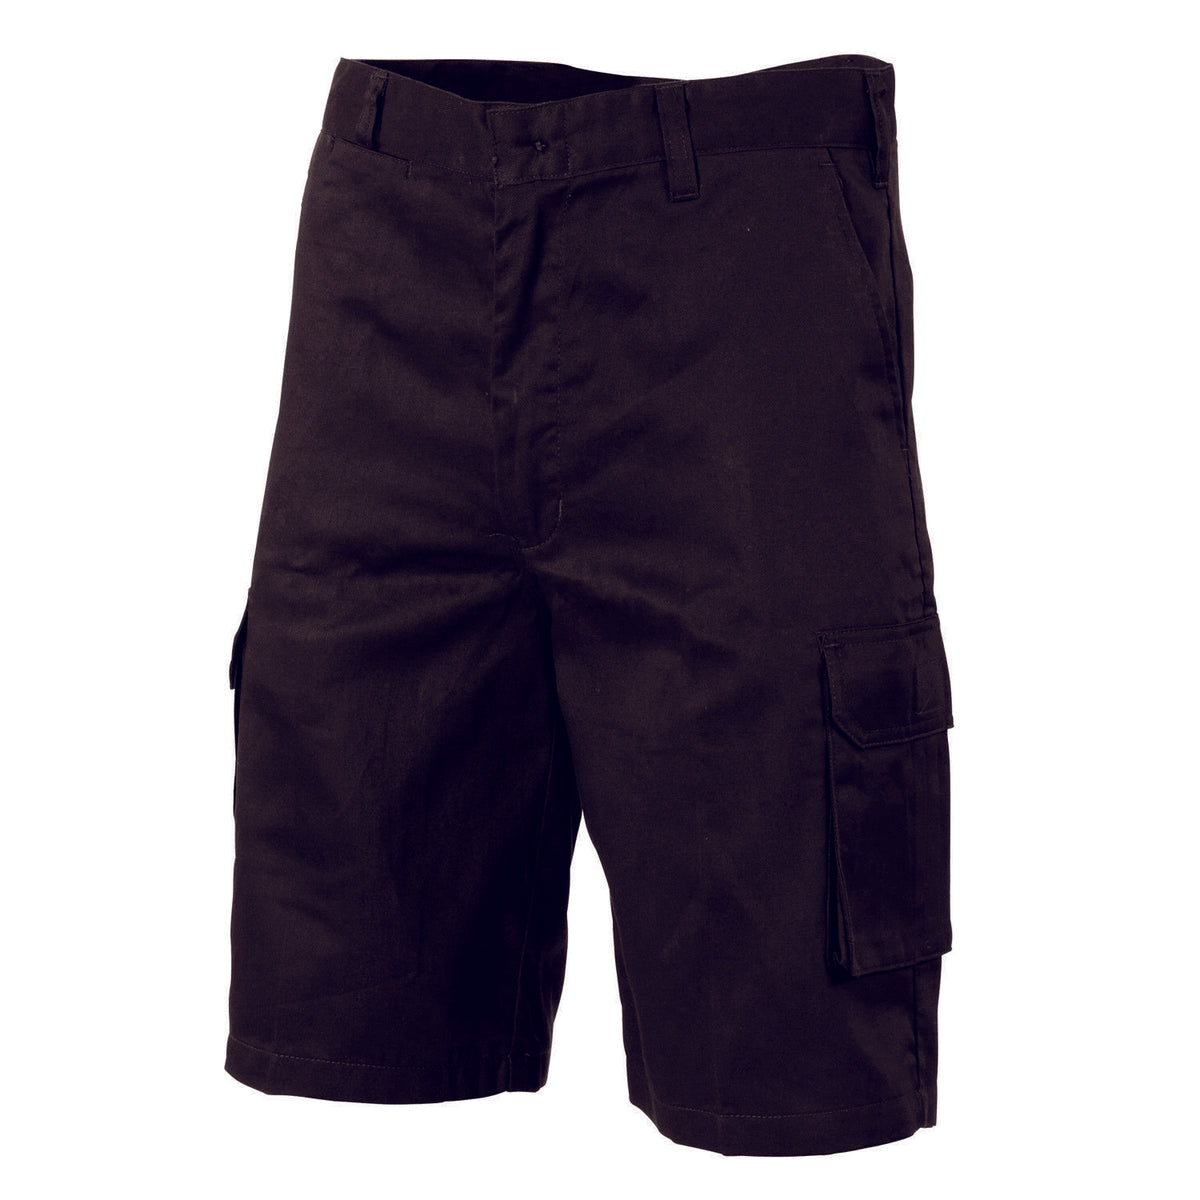 DNC Workwear Mens Lightweight Cool Breeze Cotton Cargo Shorts Work Pants 3304